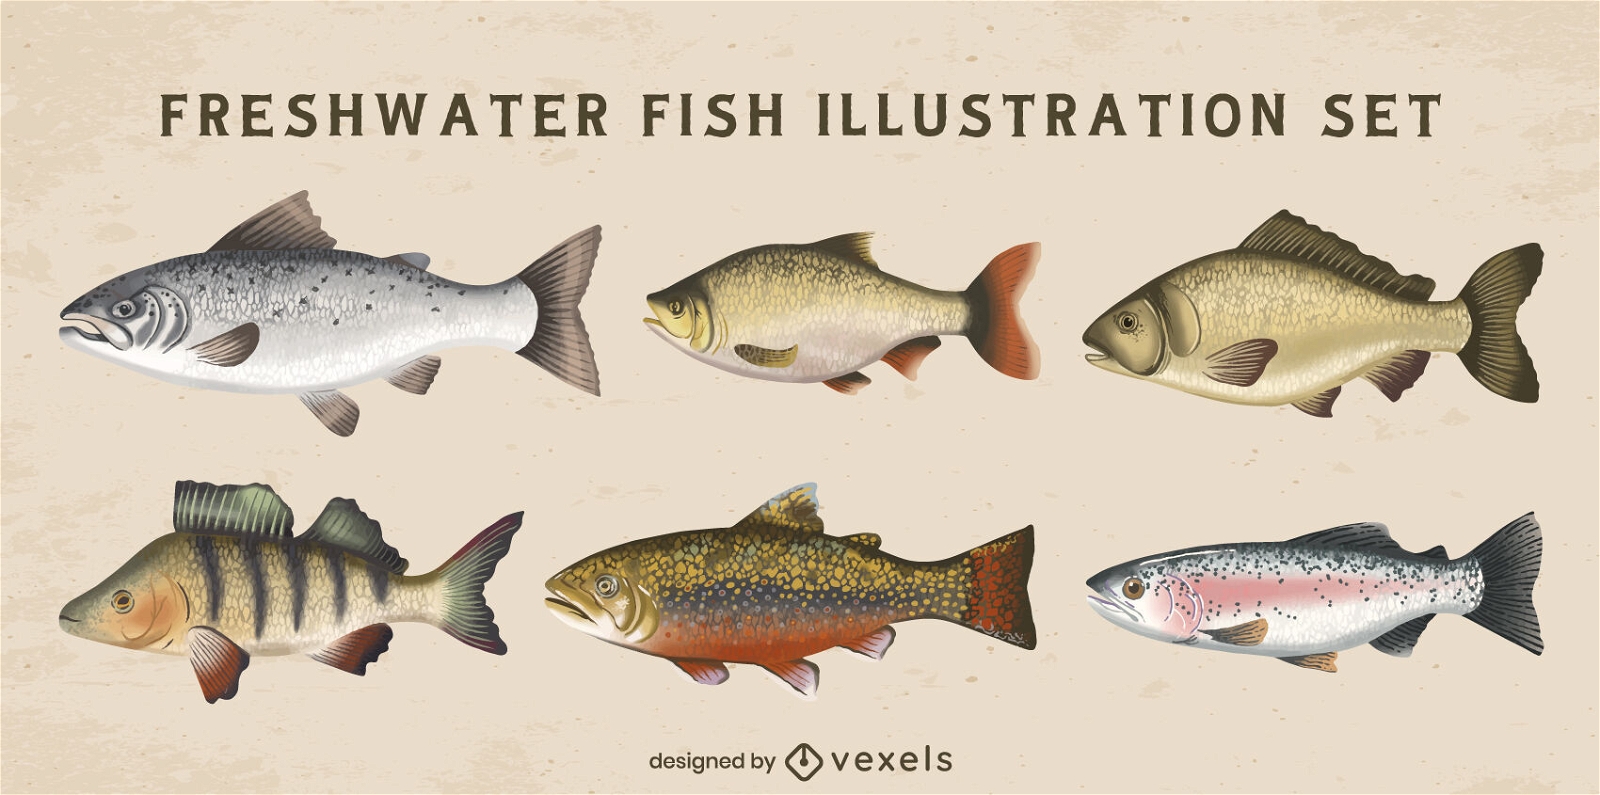 Freshwater fishes sea animal illustration set